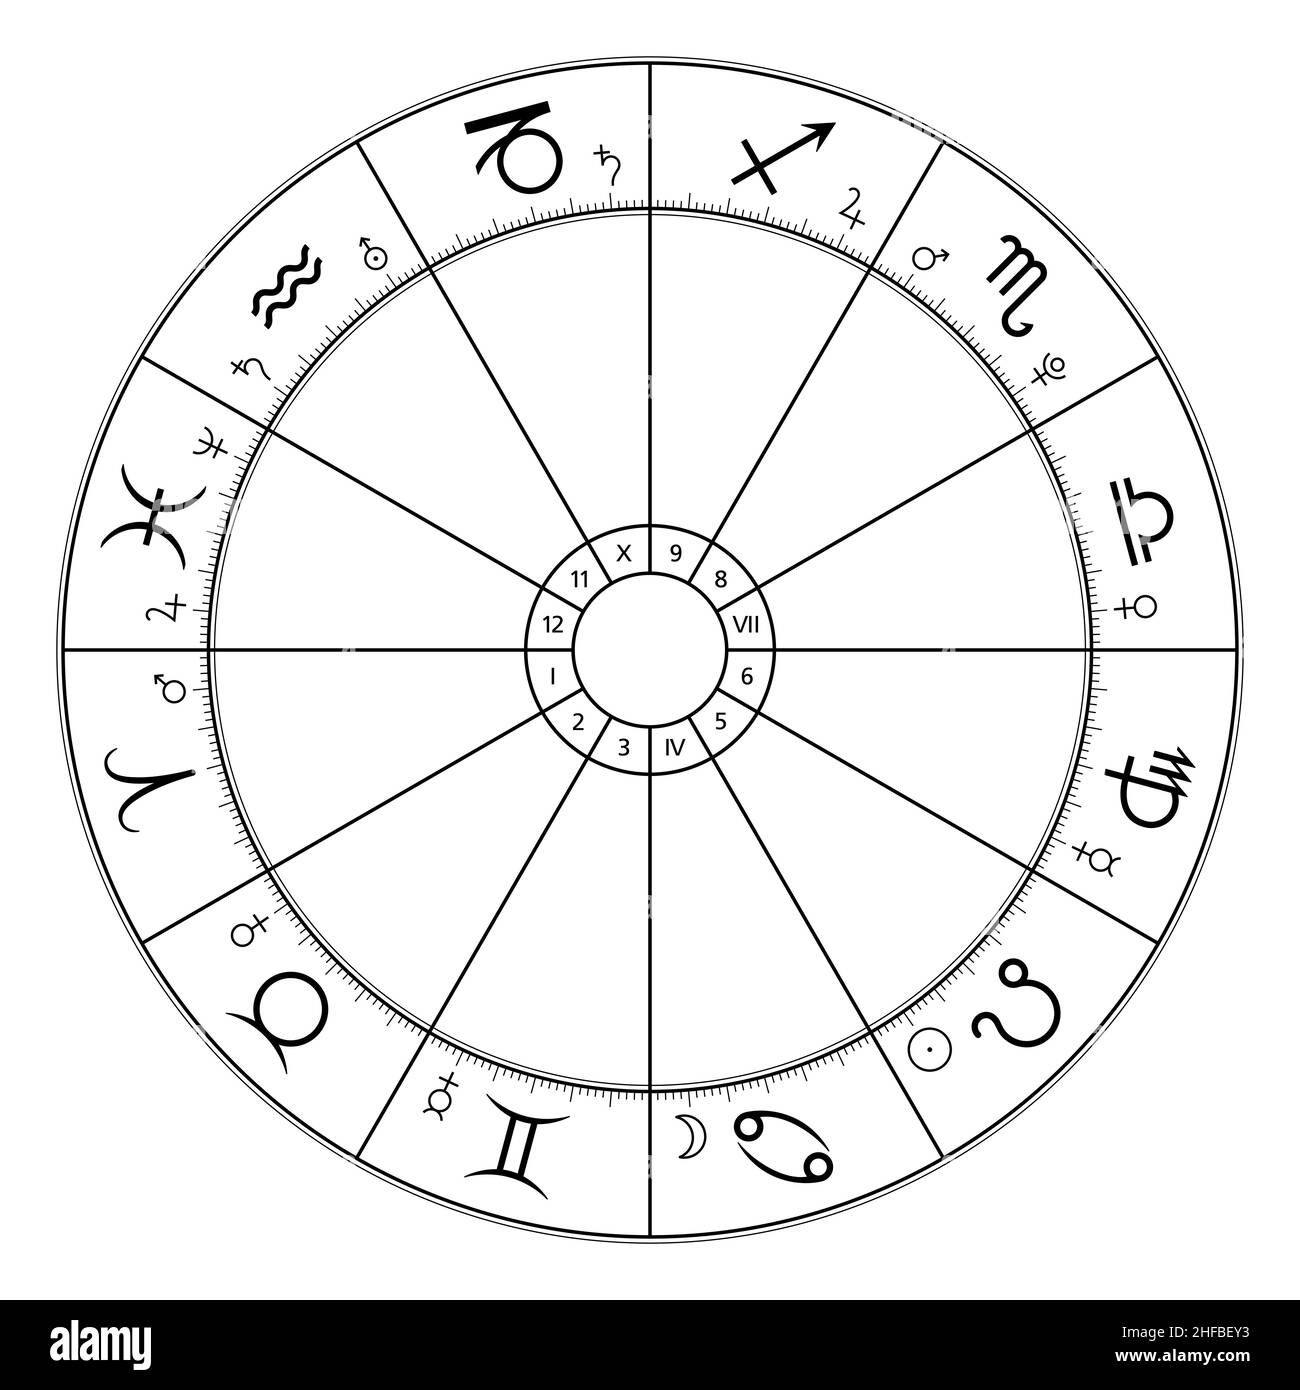 Cercle de zodiaque, carte astrologique, montrant douze signes d'étoiles, et symboles de planète d'appartenance.Roue du zodiaque, utilisée dans l'astrologie horoscopique moderne. Banque D'Images